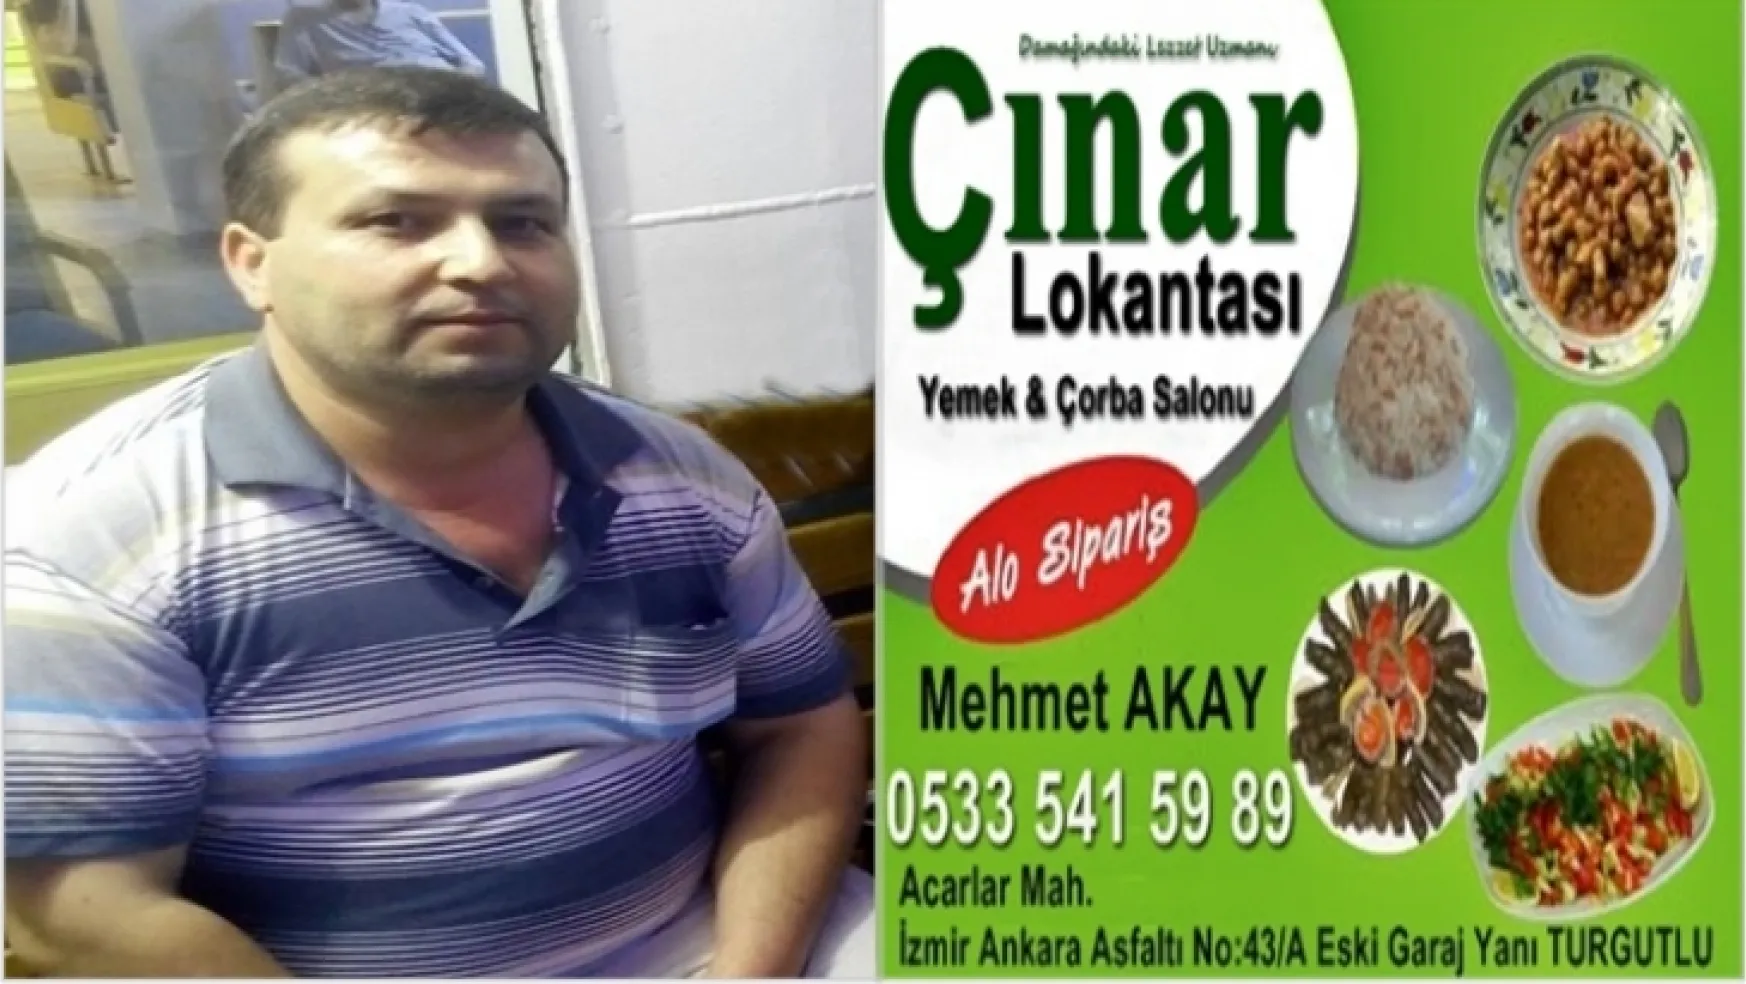 Turgutlu Çınar Lokantası, Kurban Bayramı dolayısıyla mesaj yayımladı.